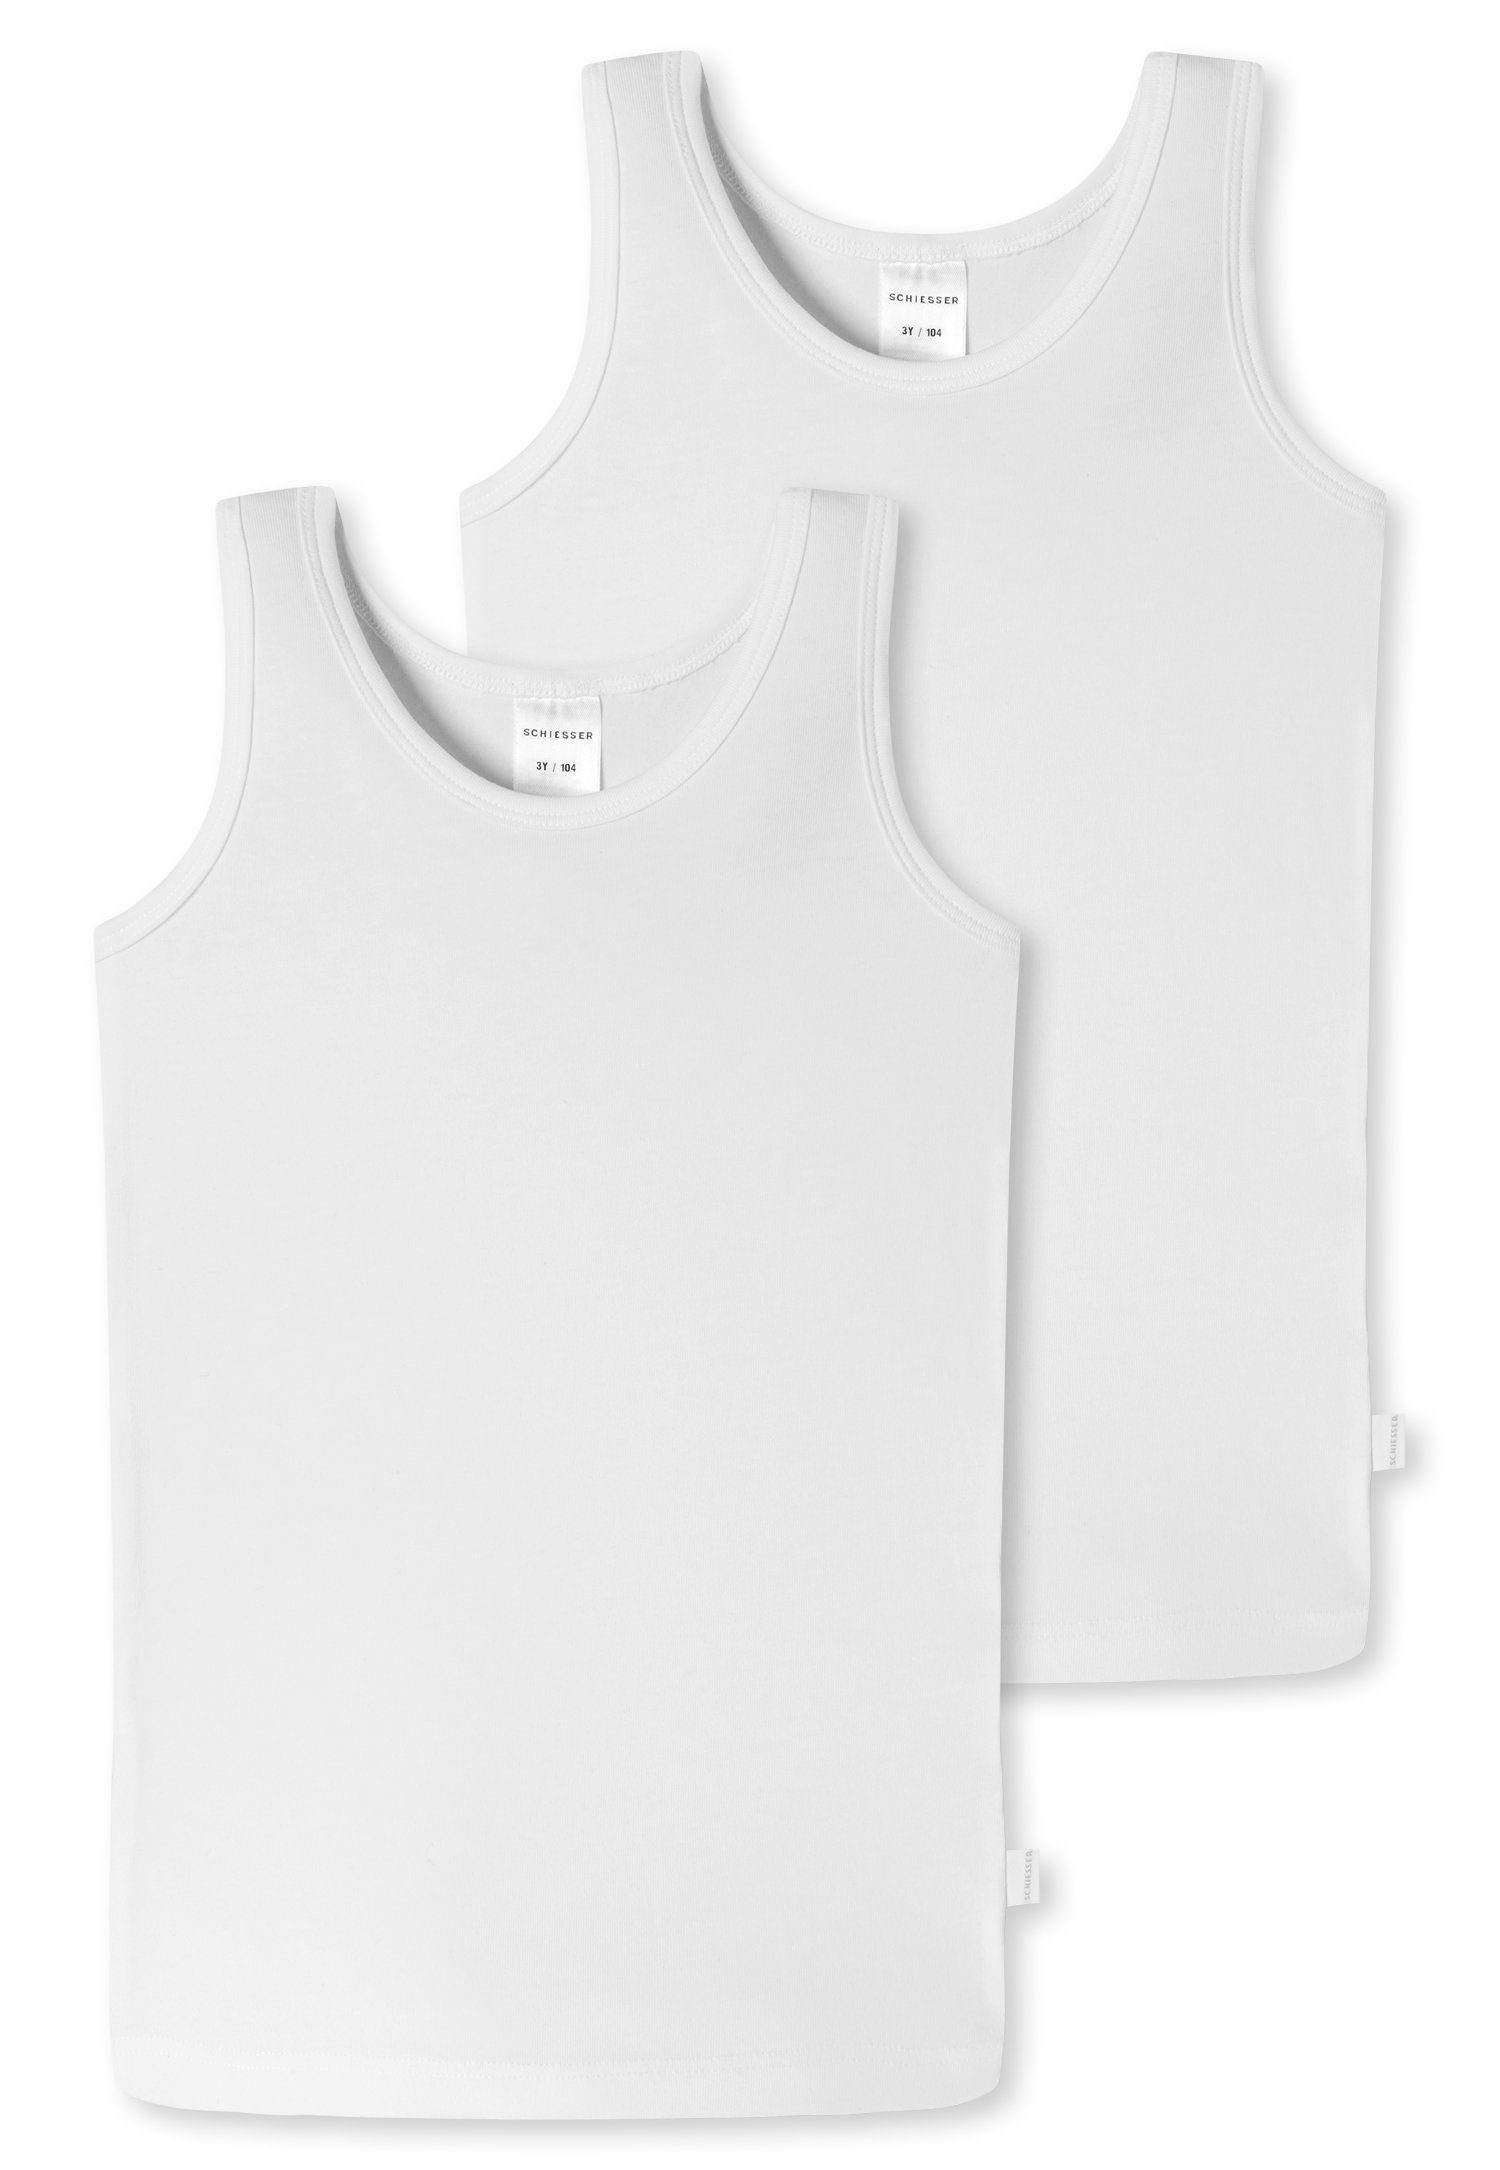 Schiesser Unterhemd weiß mit (2er-Pack) Markenlabel